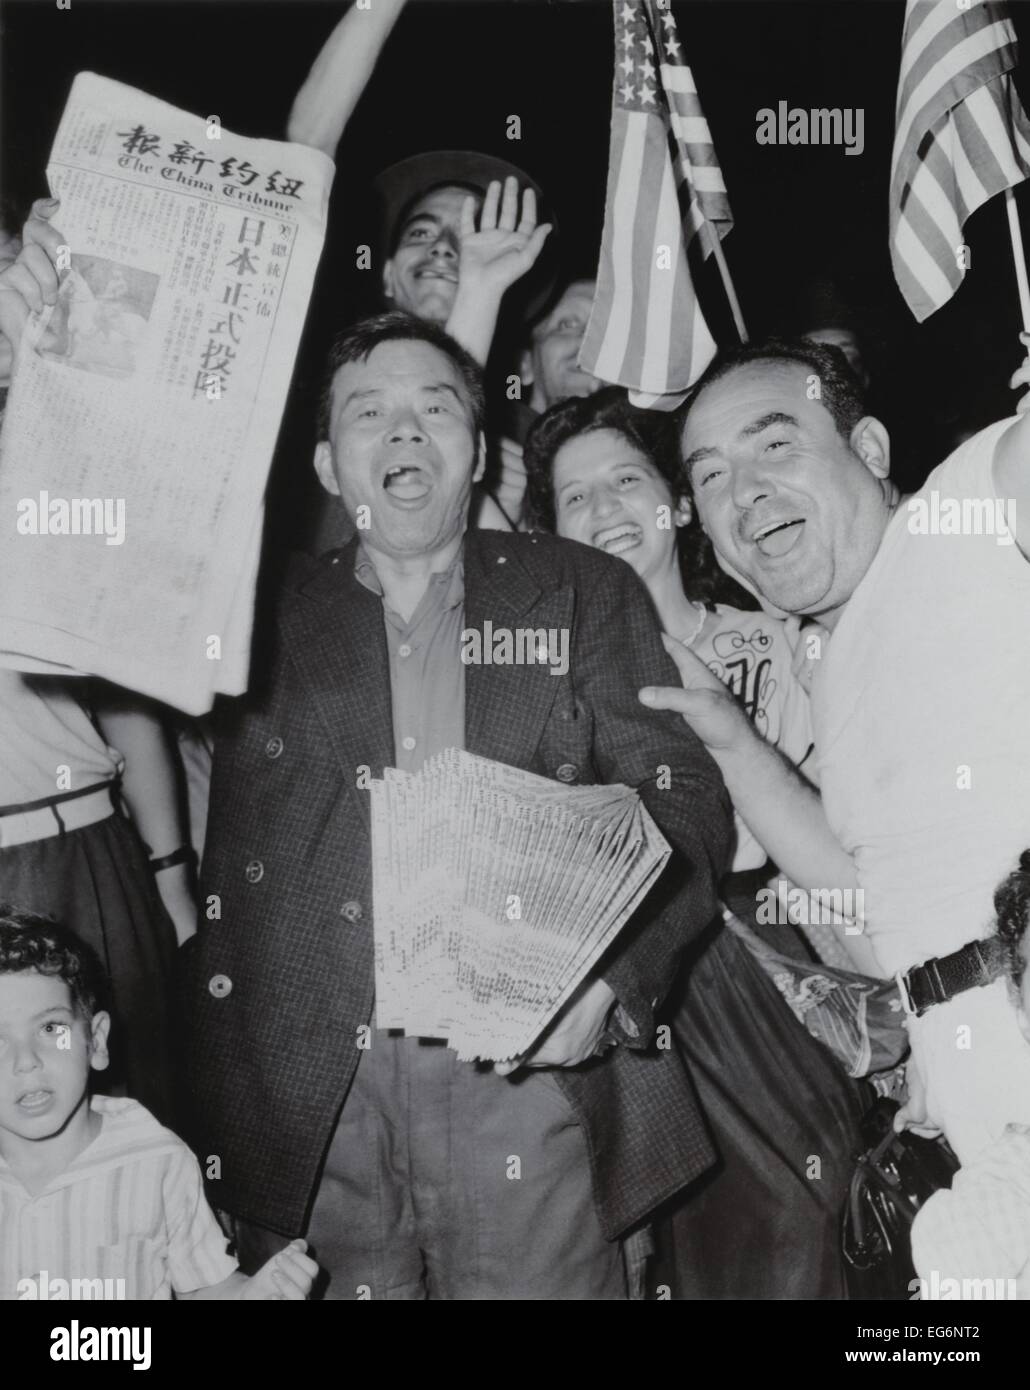 Vendeur de journaux chinois, parmi foule agitant des drapeaux américains dans le quartier chinois, à New York, le jour de la victoire. 'La Tribune', La Chine annonce Banque D'Images